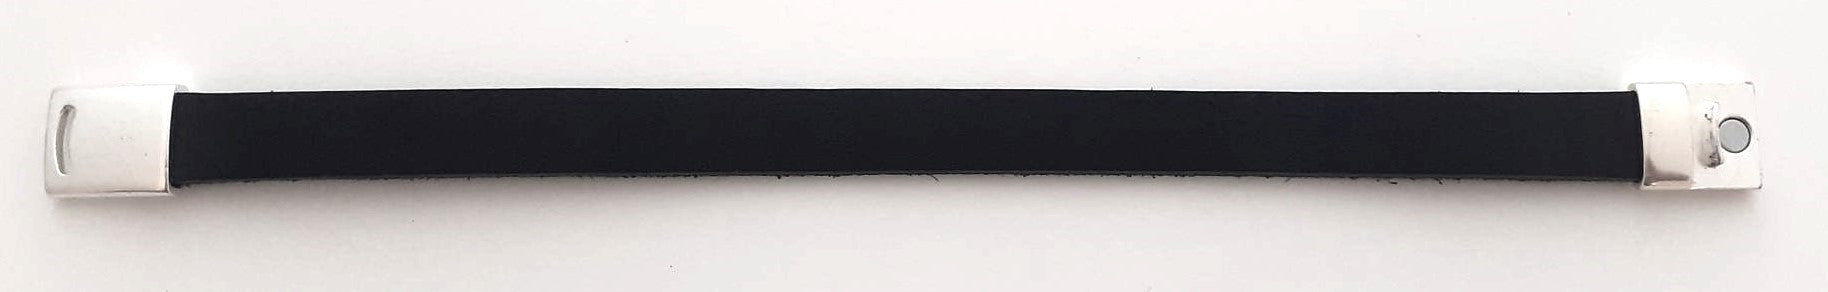 Armband 13mm met magneetsluiting - 2723